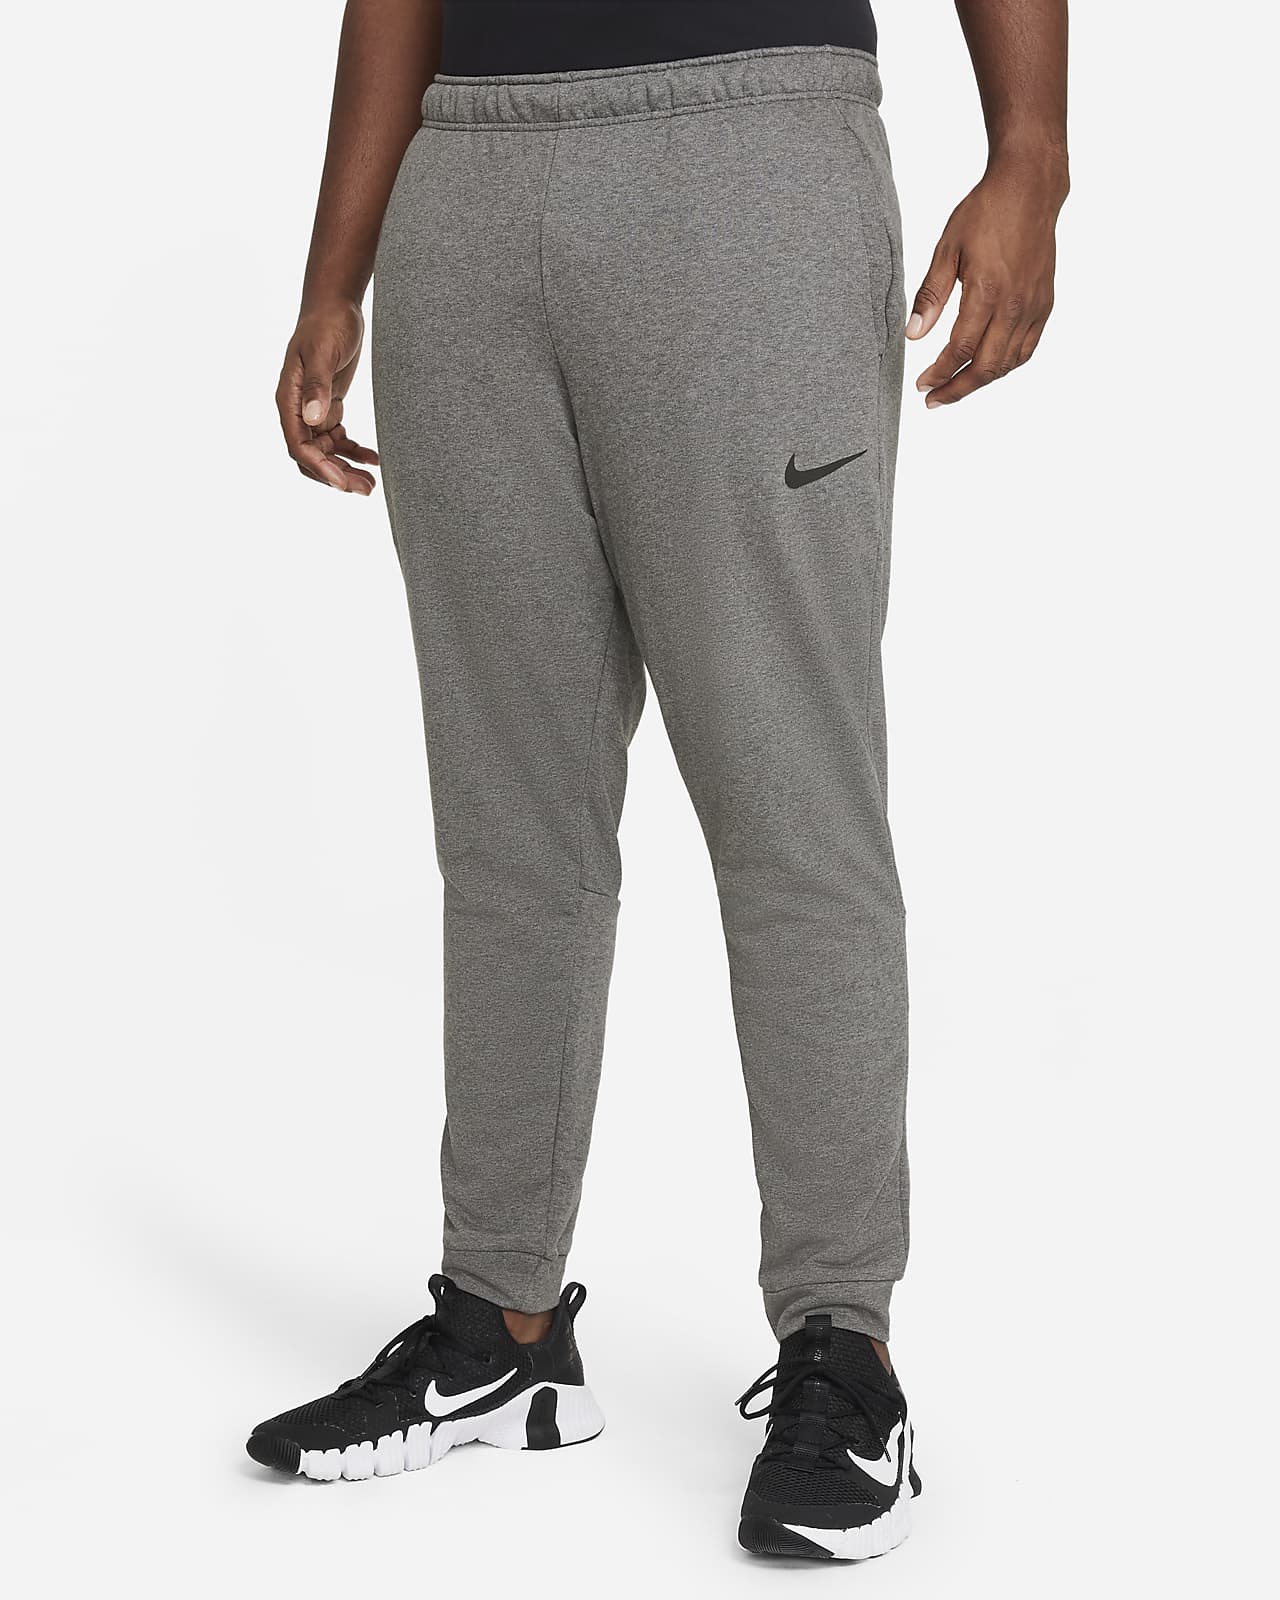 Nike Dri-FIT Men's Training Pants.